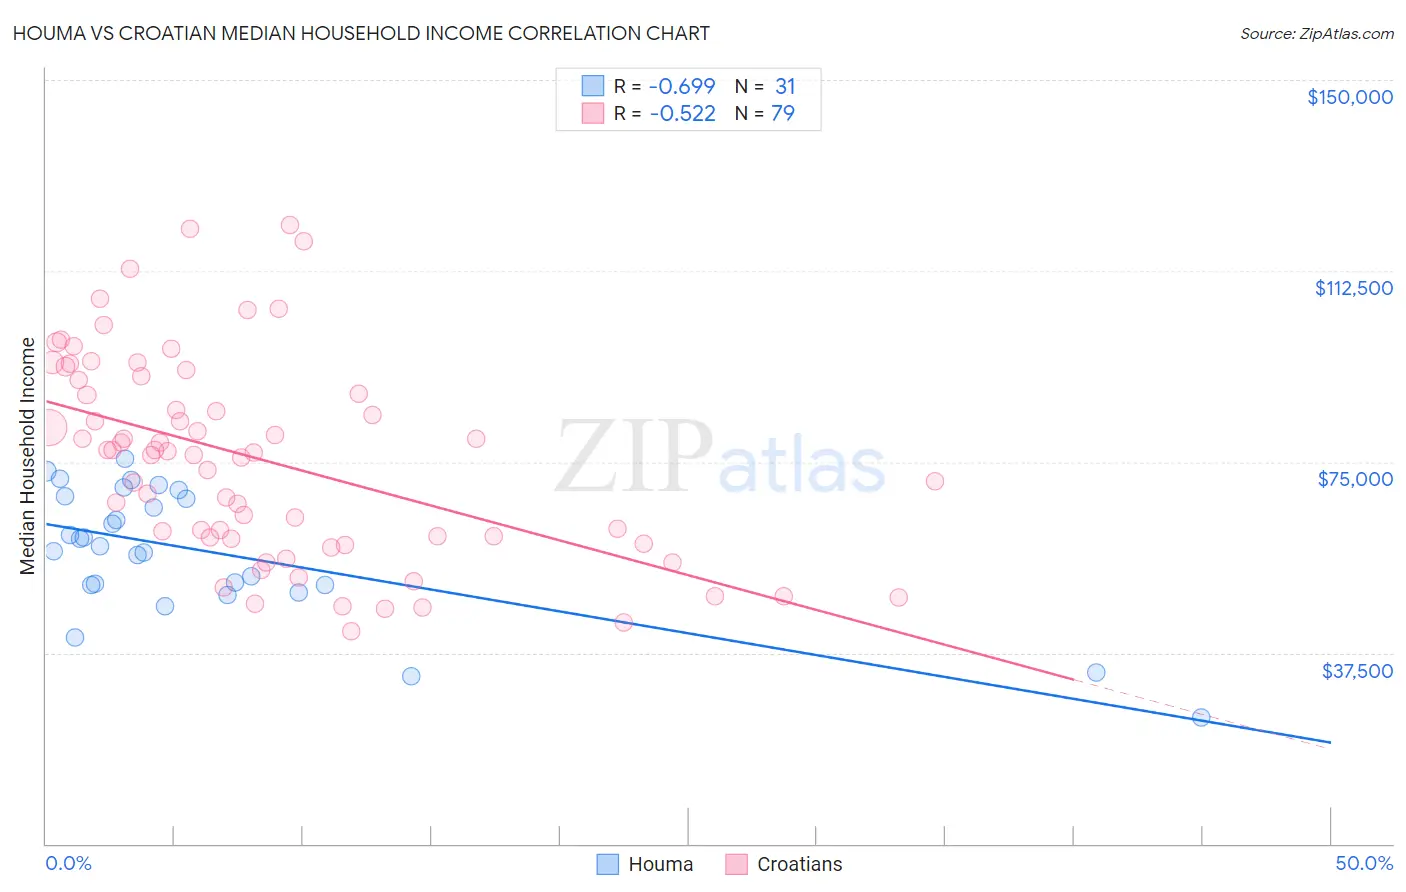 Houma vs Croatian Median Household Income